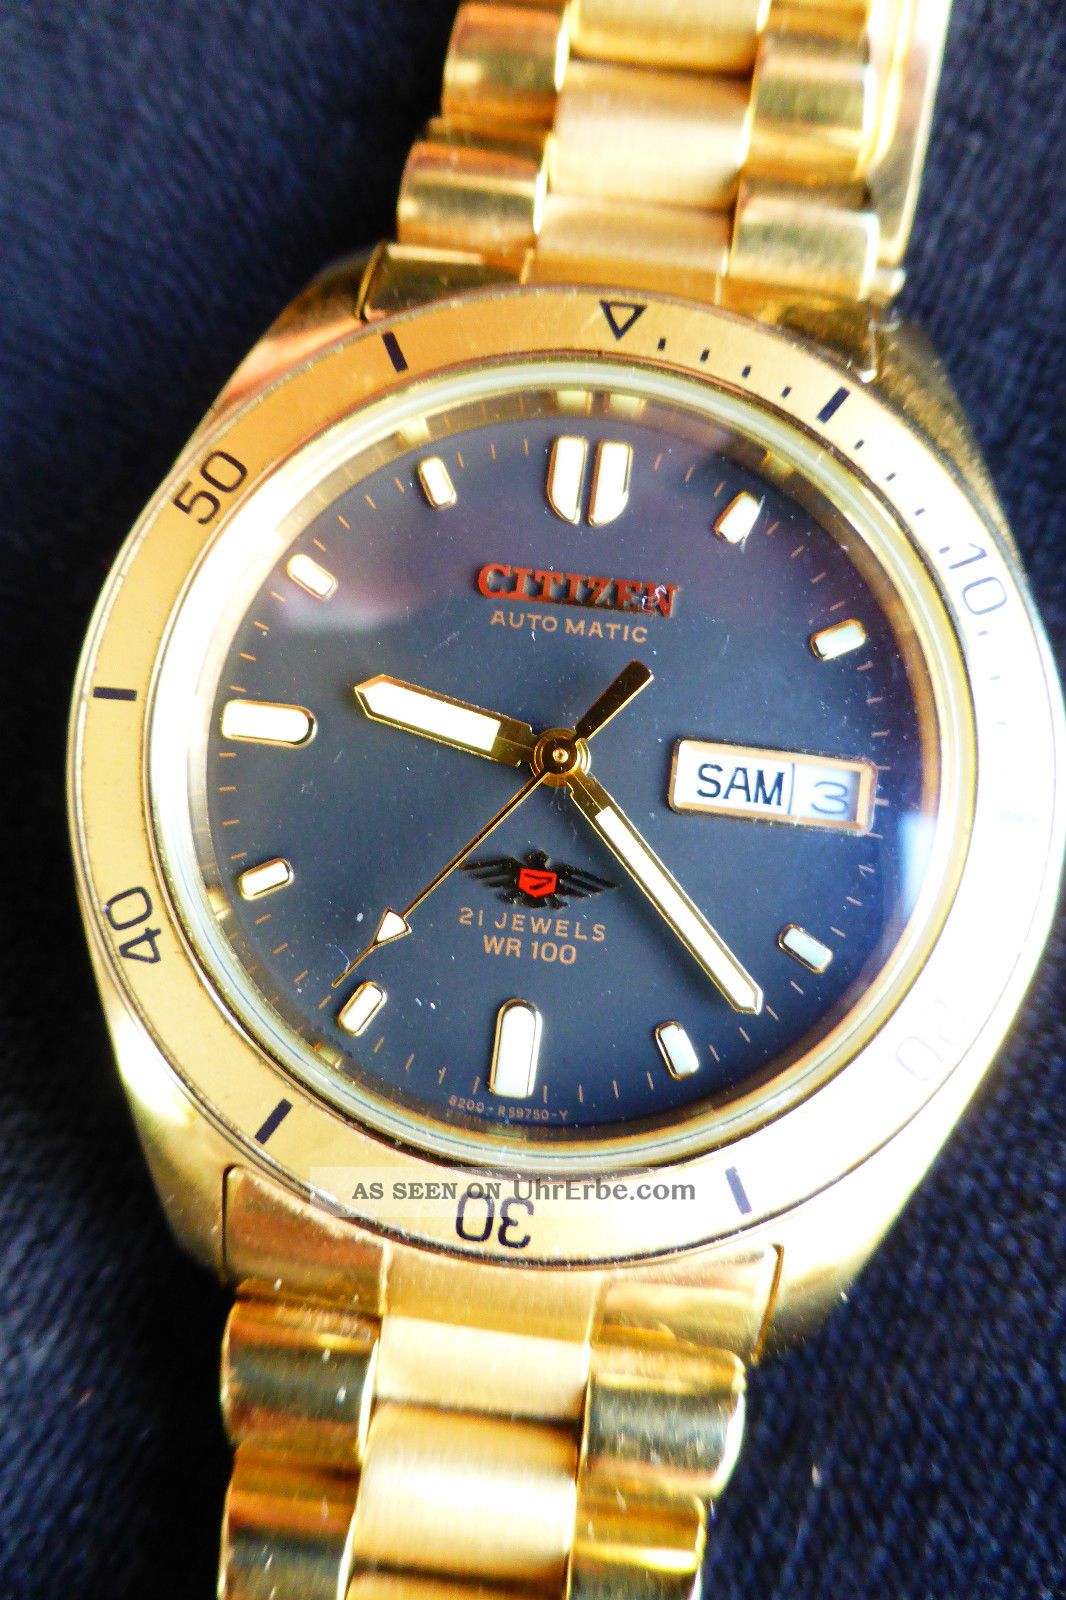 Armbanduhr Citizen Automatic Datum Und Tag (day/date),  Wr100,  21 Steine Metallband Armbanduhren Bild